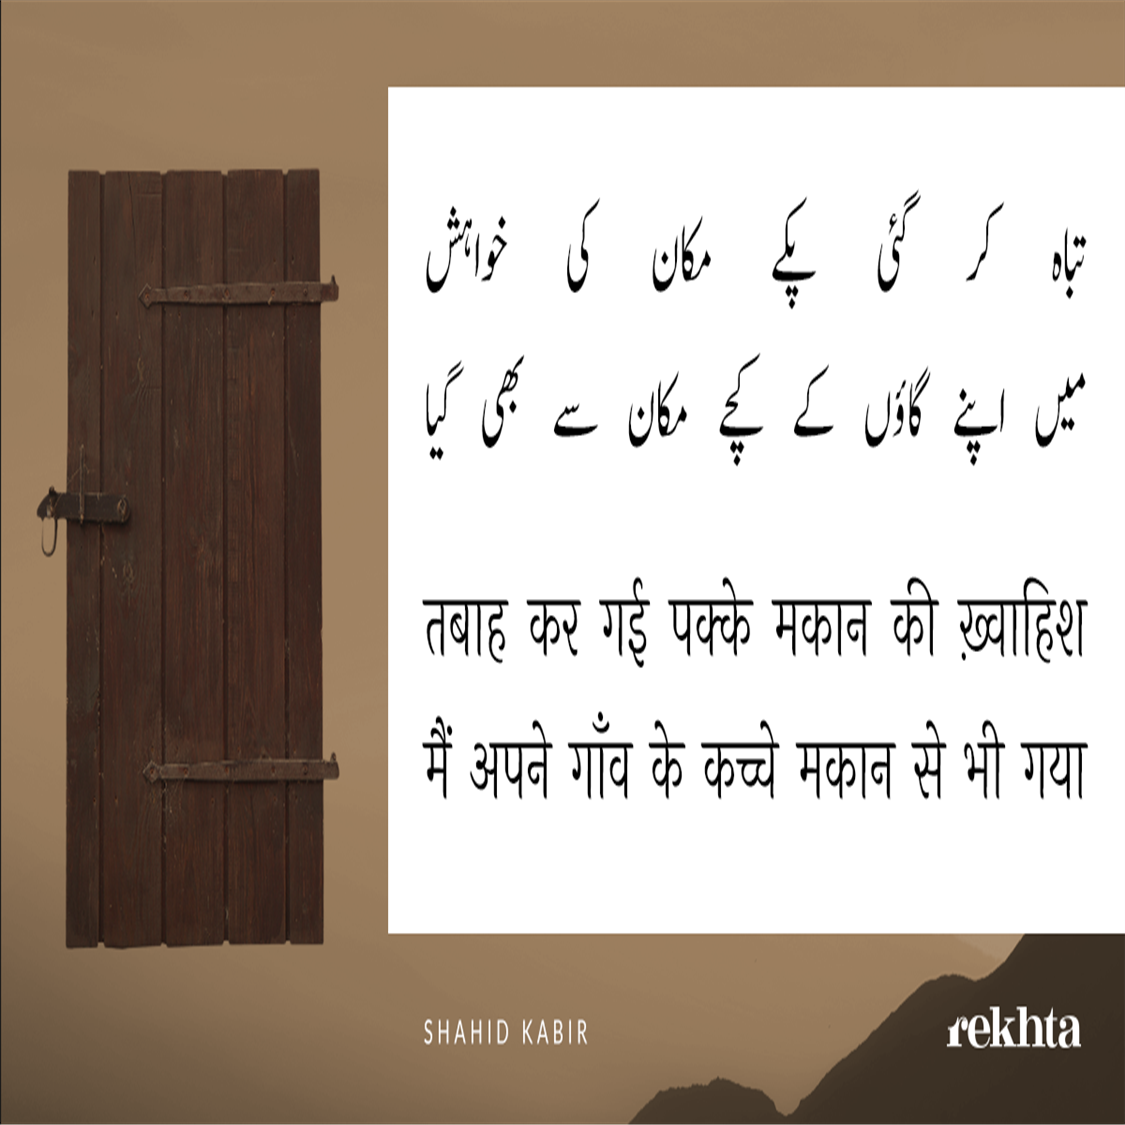 tabaah kar ga.ii pakke makaan kii KHvaahish-Shahid Kabir